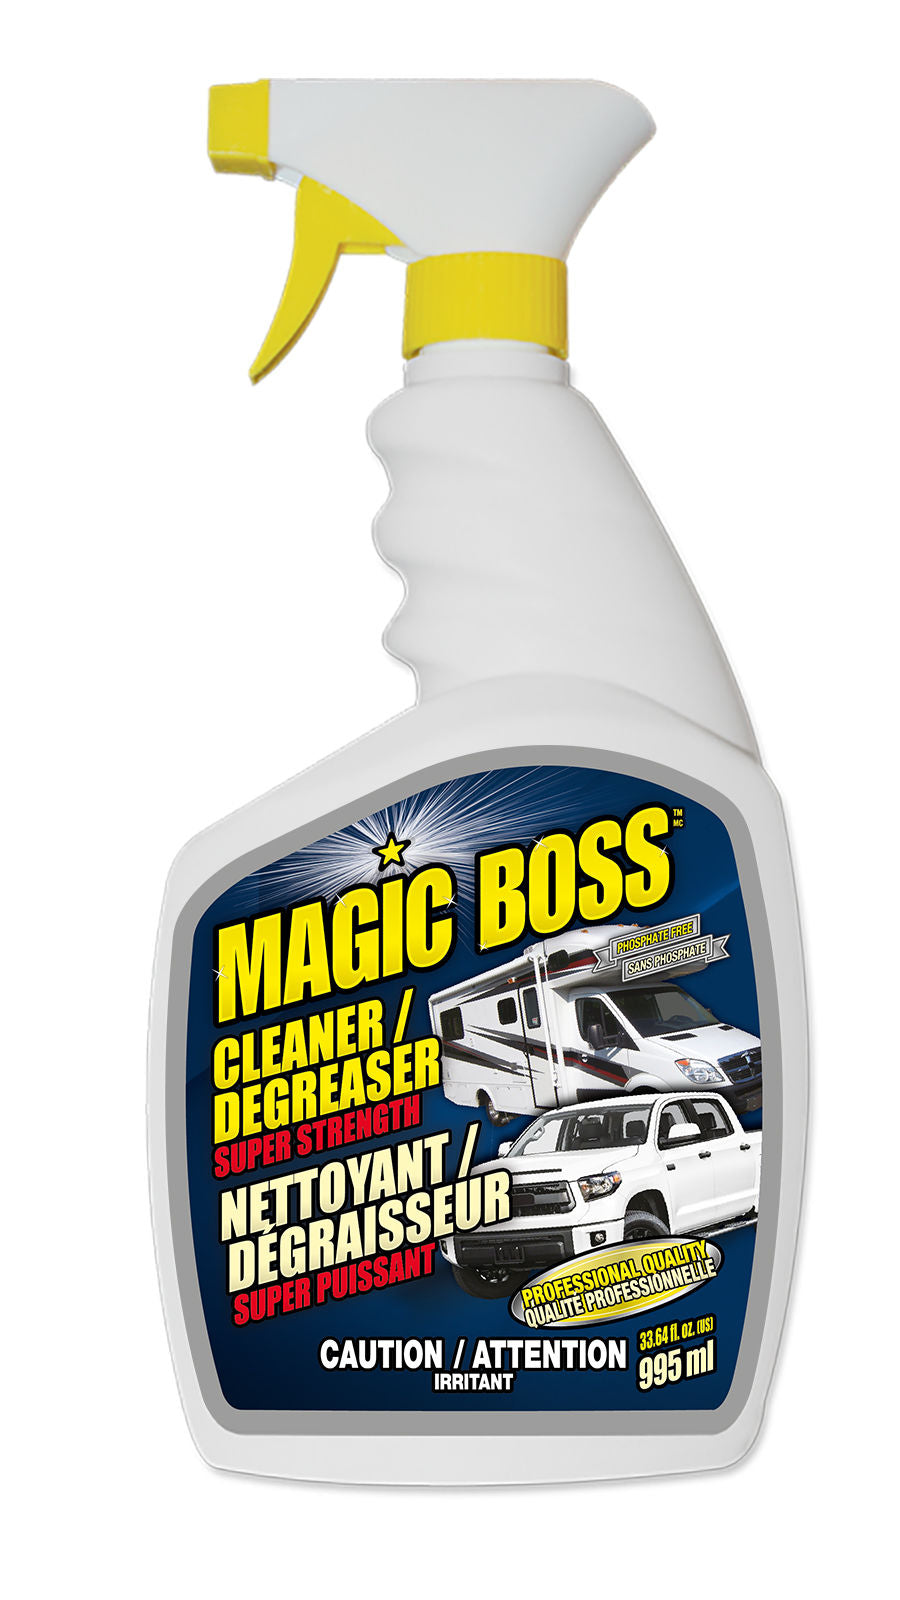 Magic Boss 1600 - Cleaner / Degreaser Super Strength (995 ml)